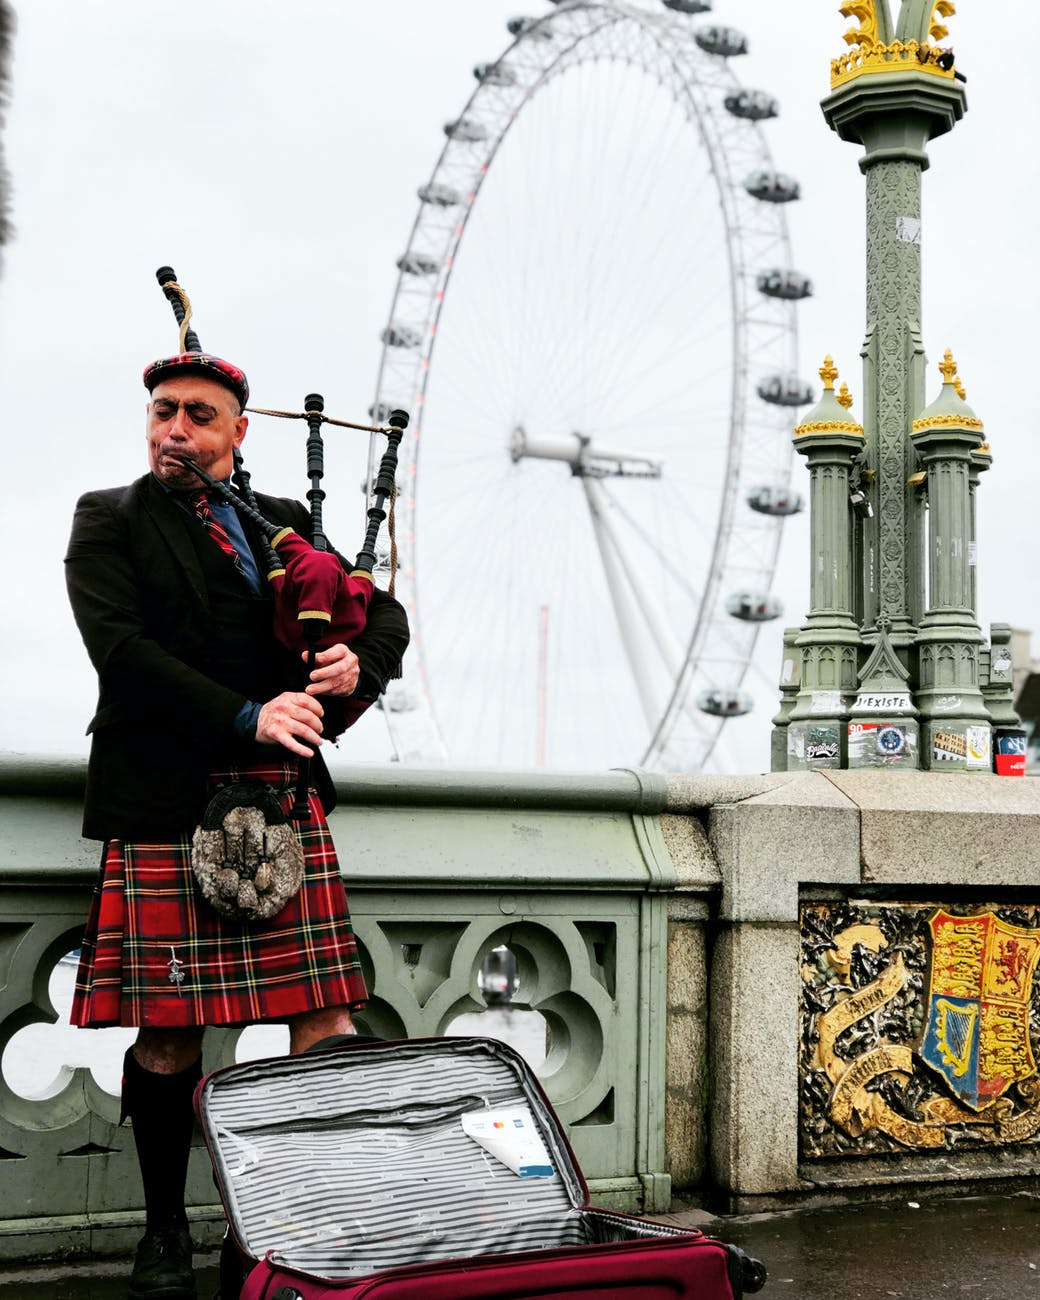 musician in scottish kilt in london